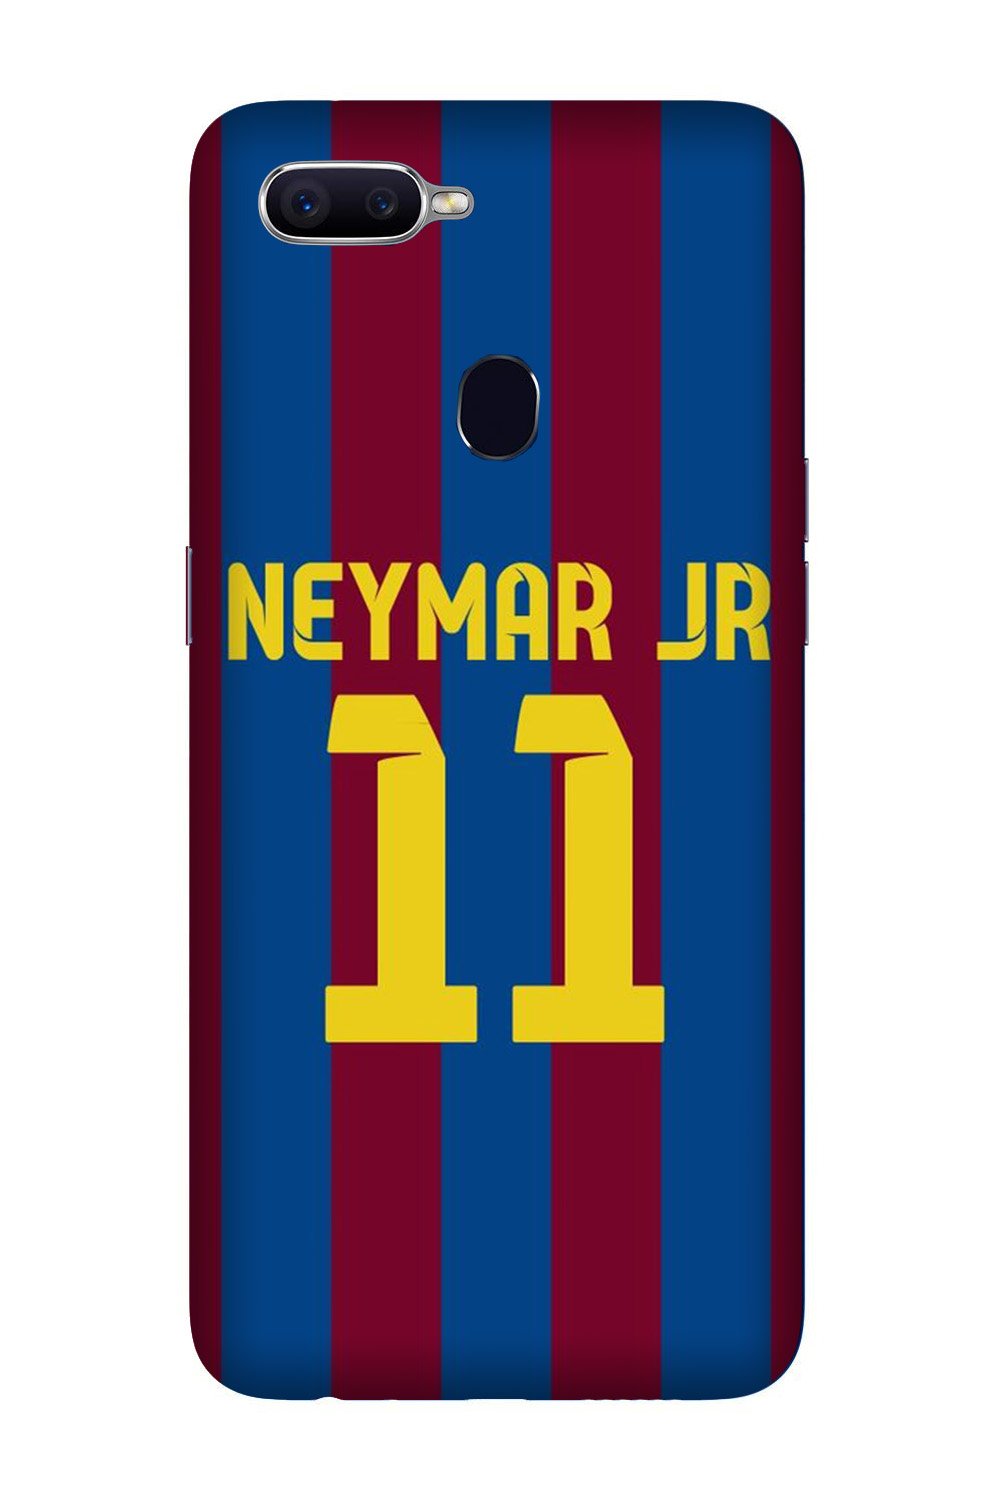 Neymar Jr Case for Oppo A5(Design - 162)